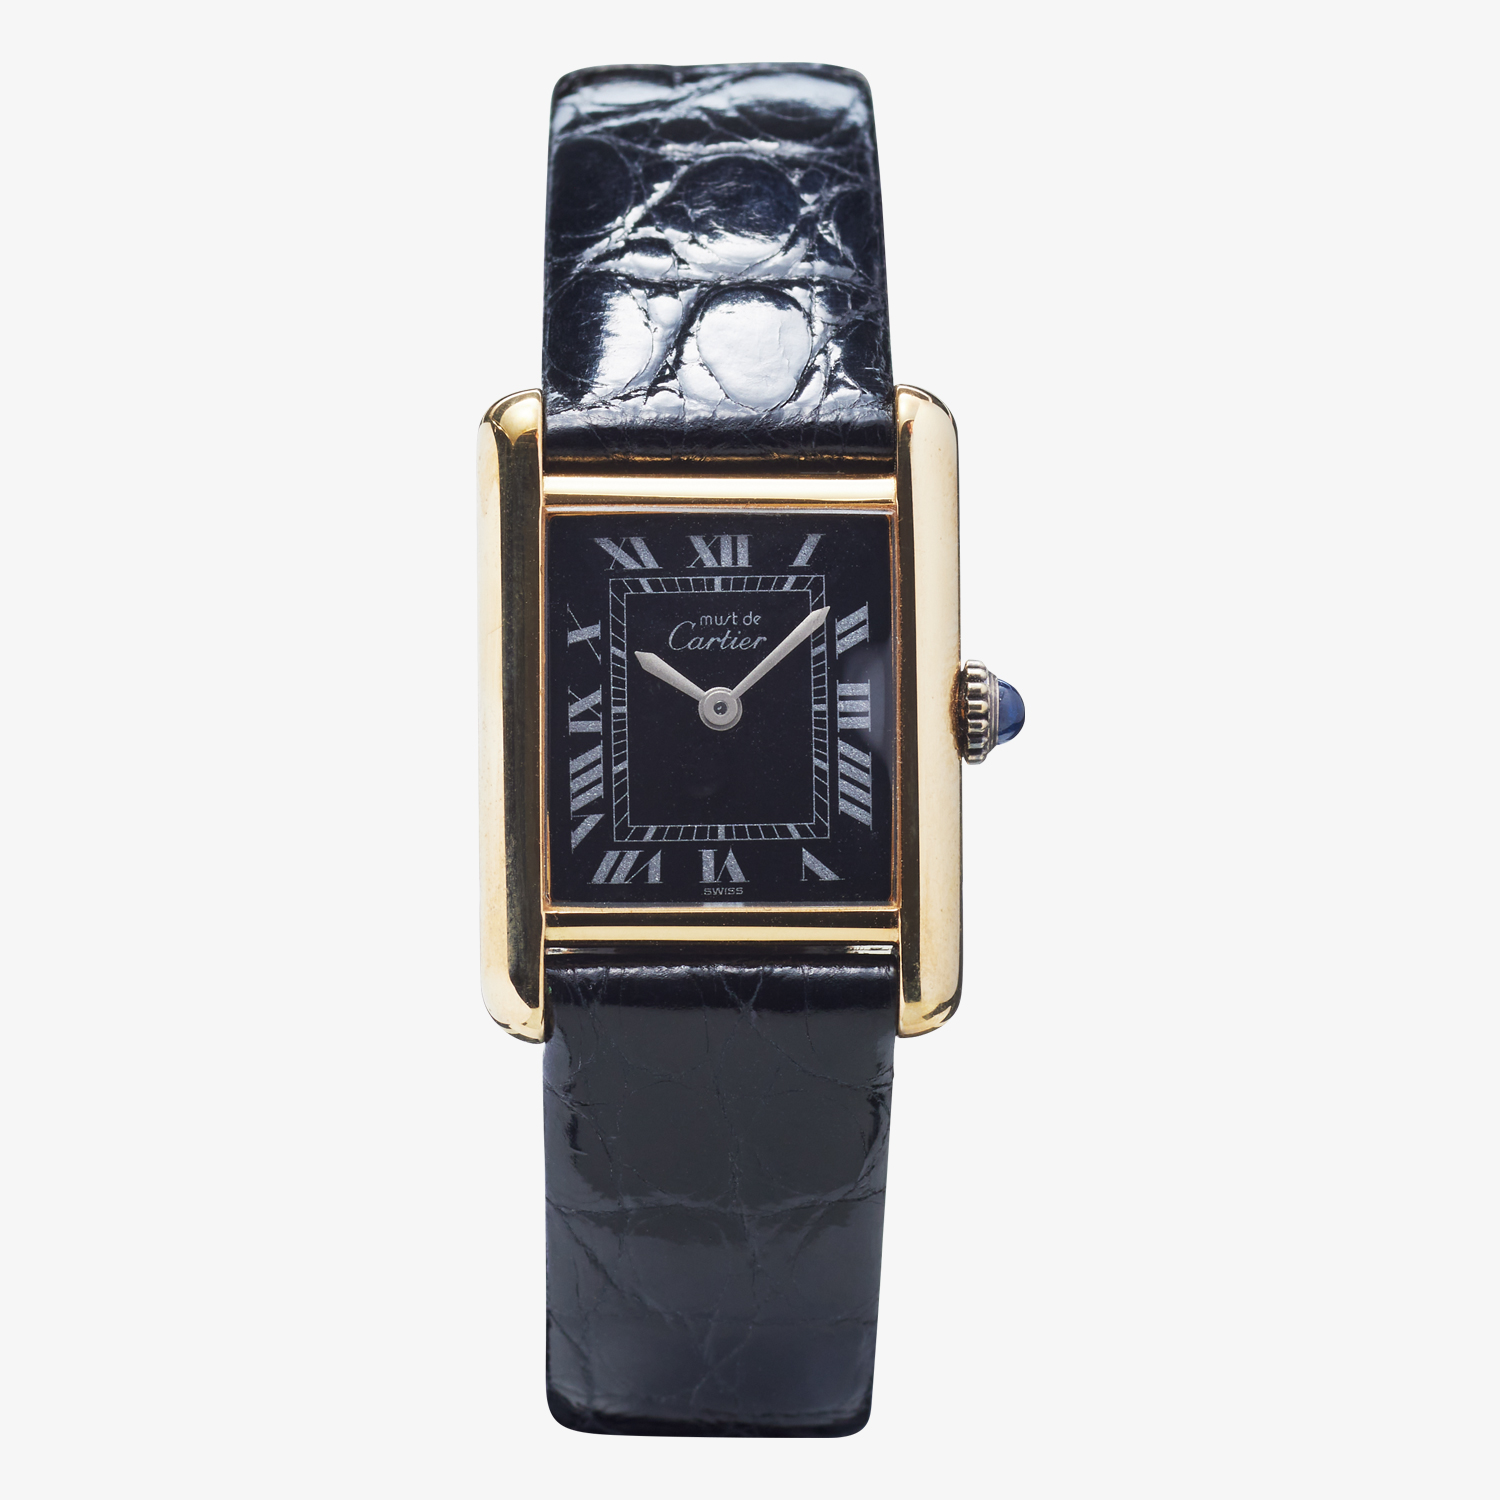 Cartier｜must de Cartier TANK SM｜Hand winding｜Black Roman Dial - 80's｜Cartier (Vintage Watch)